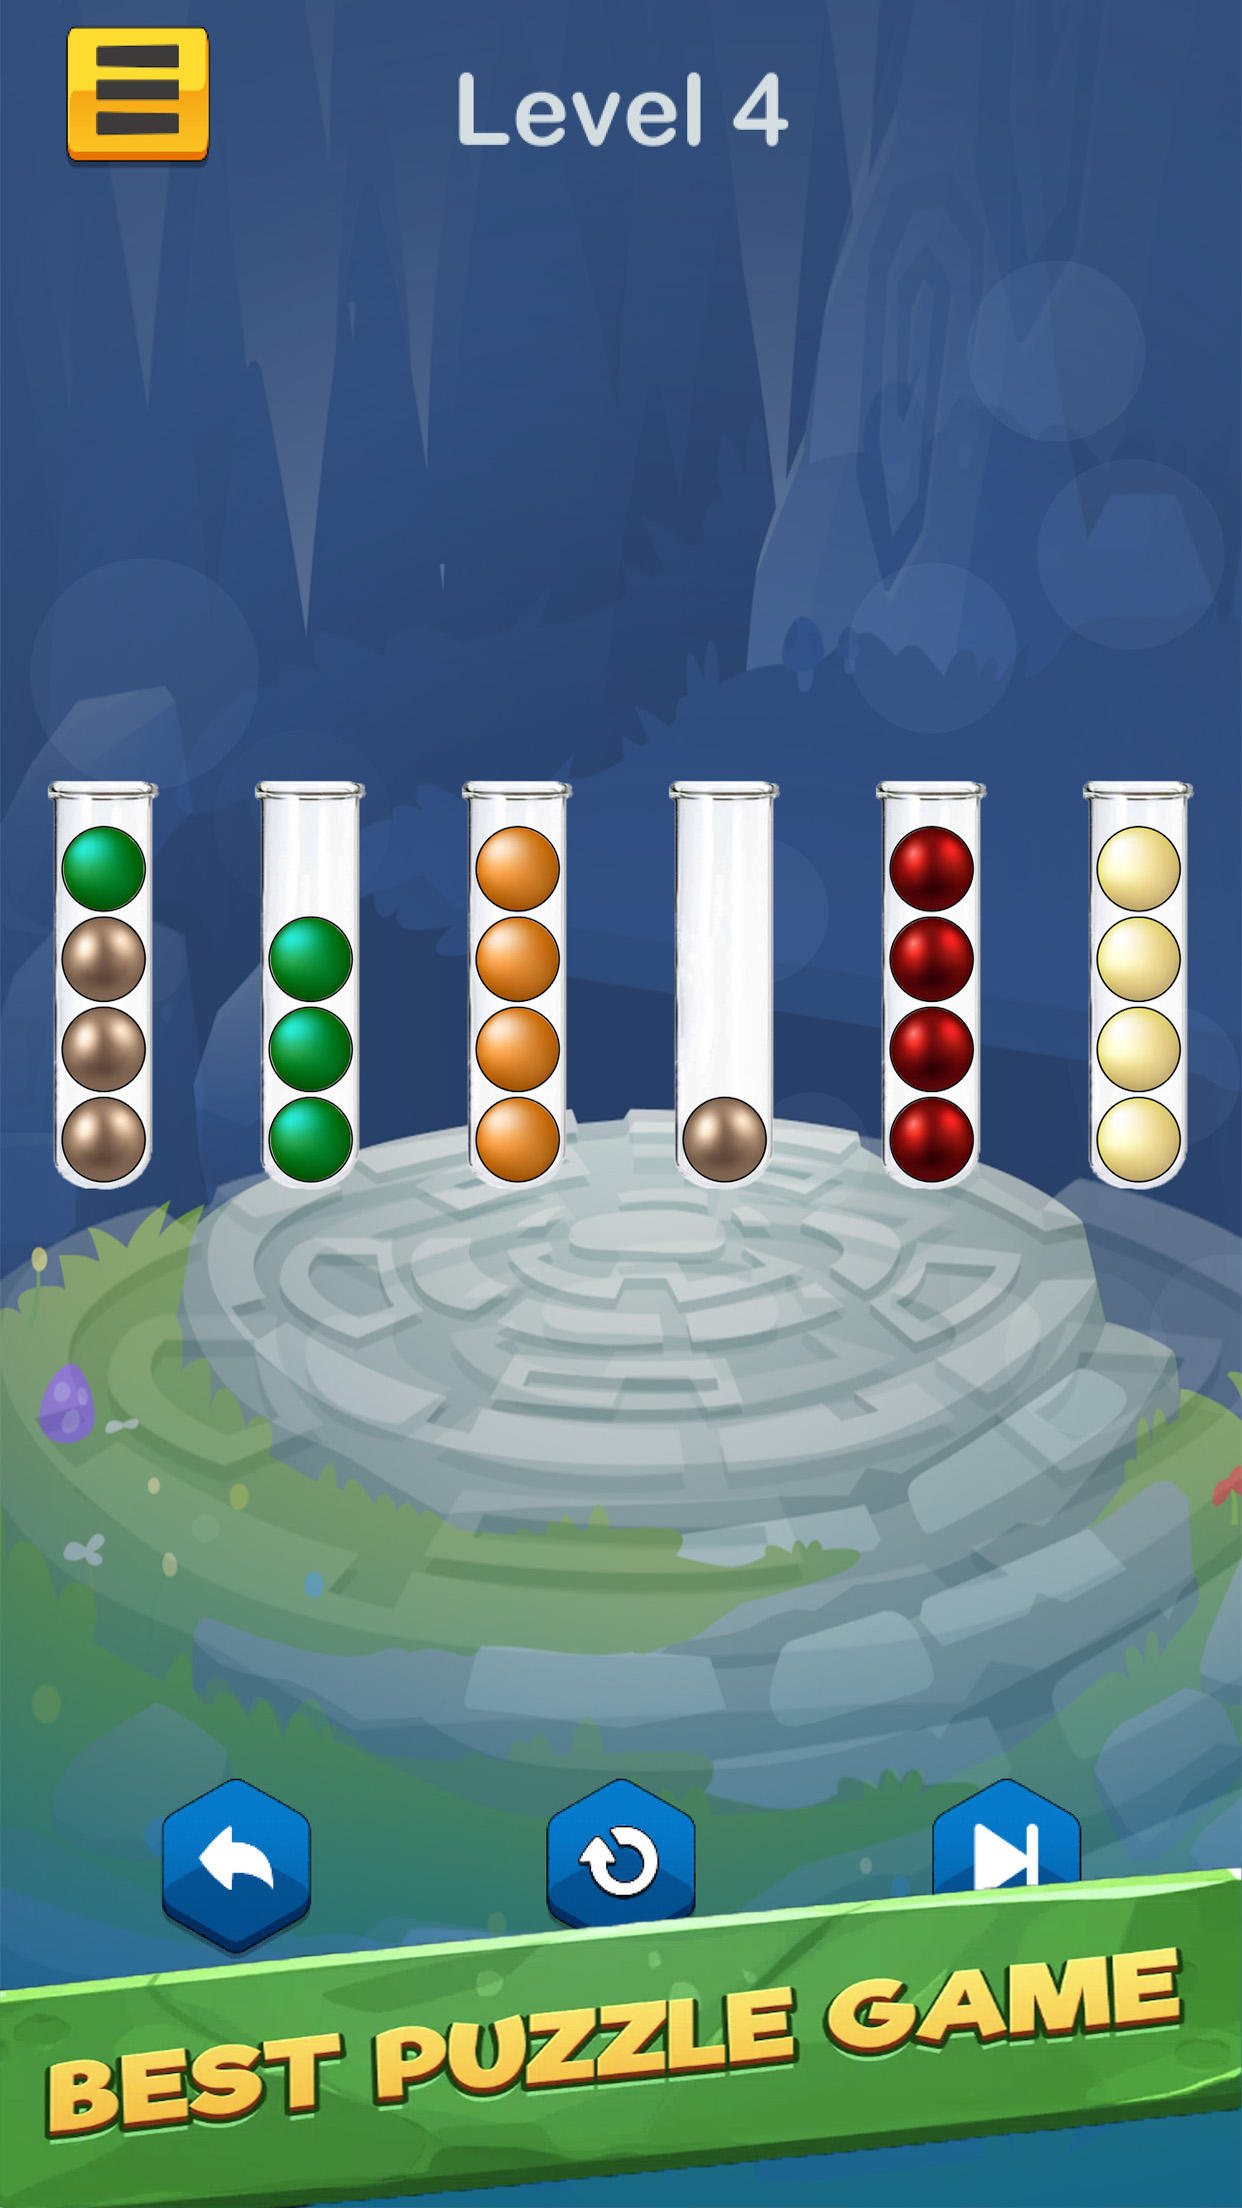 Jogos de quebra cabeça de cores de classificação de bola versão